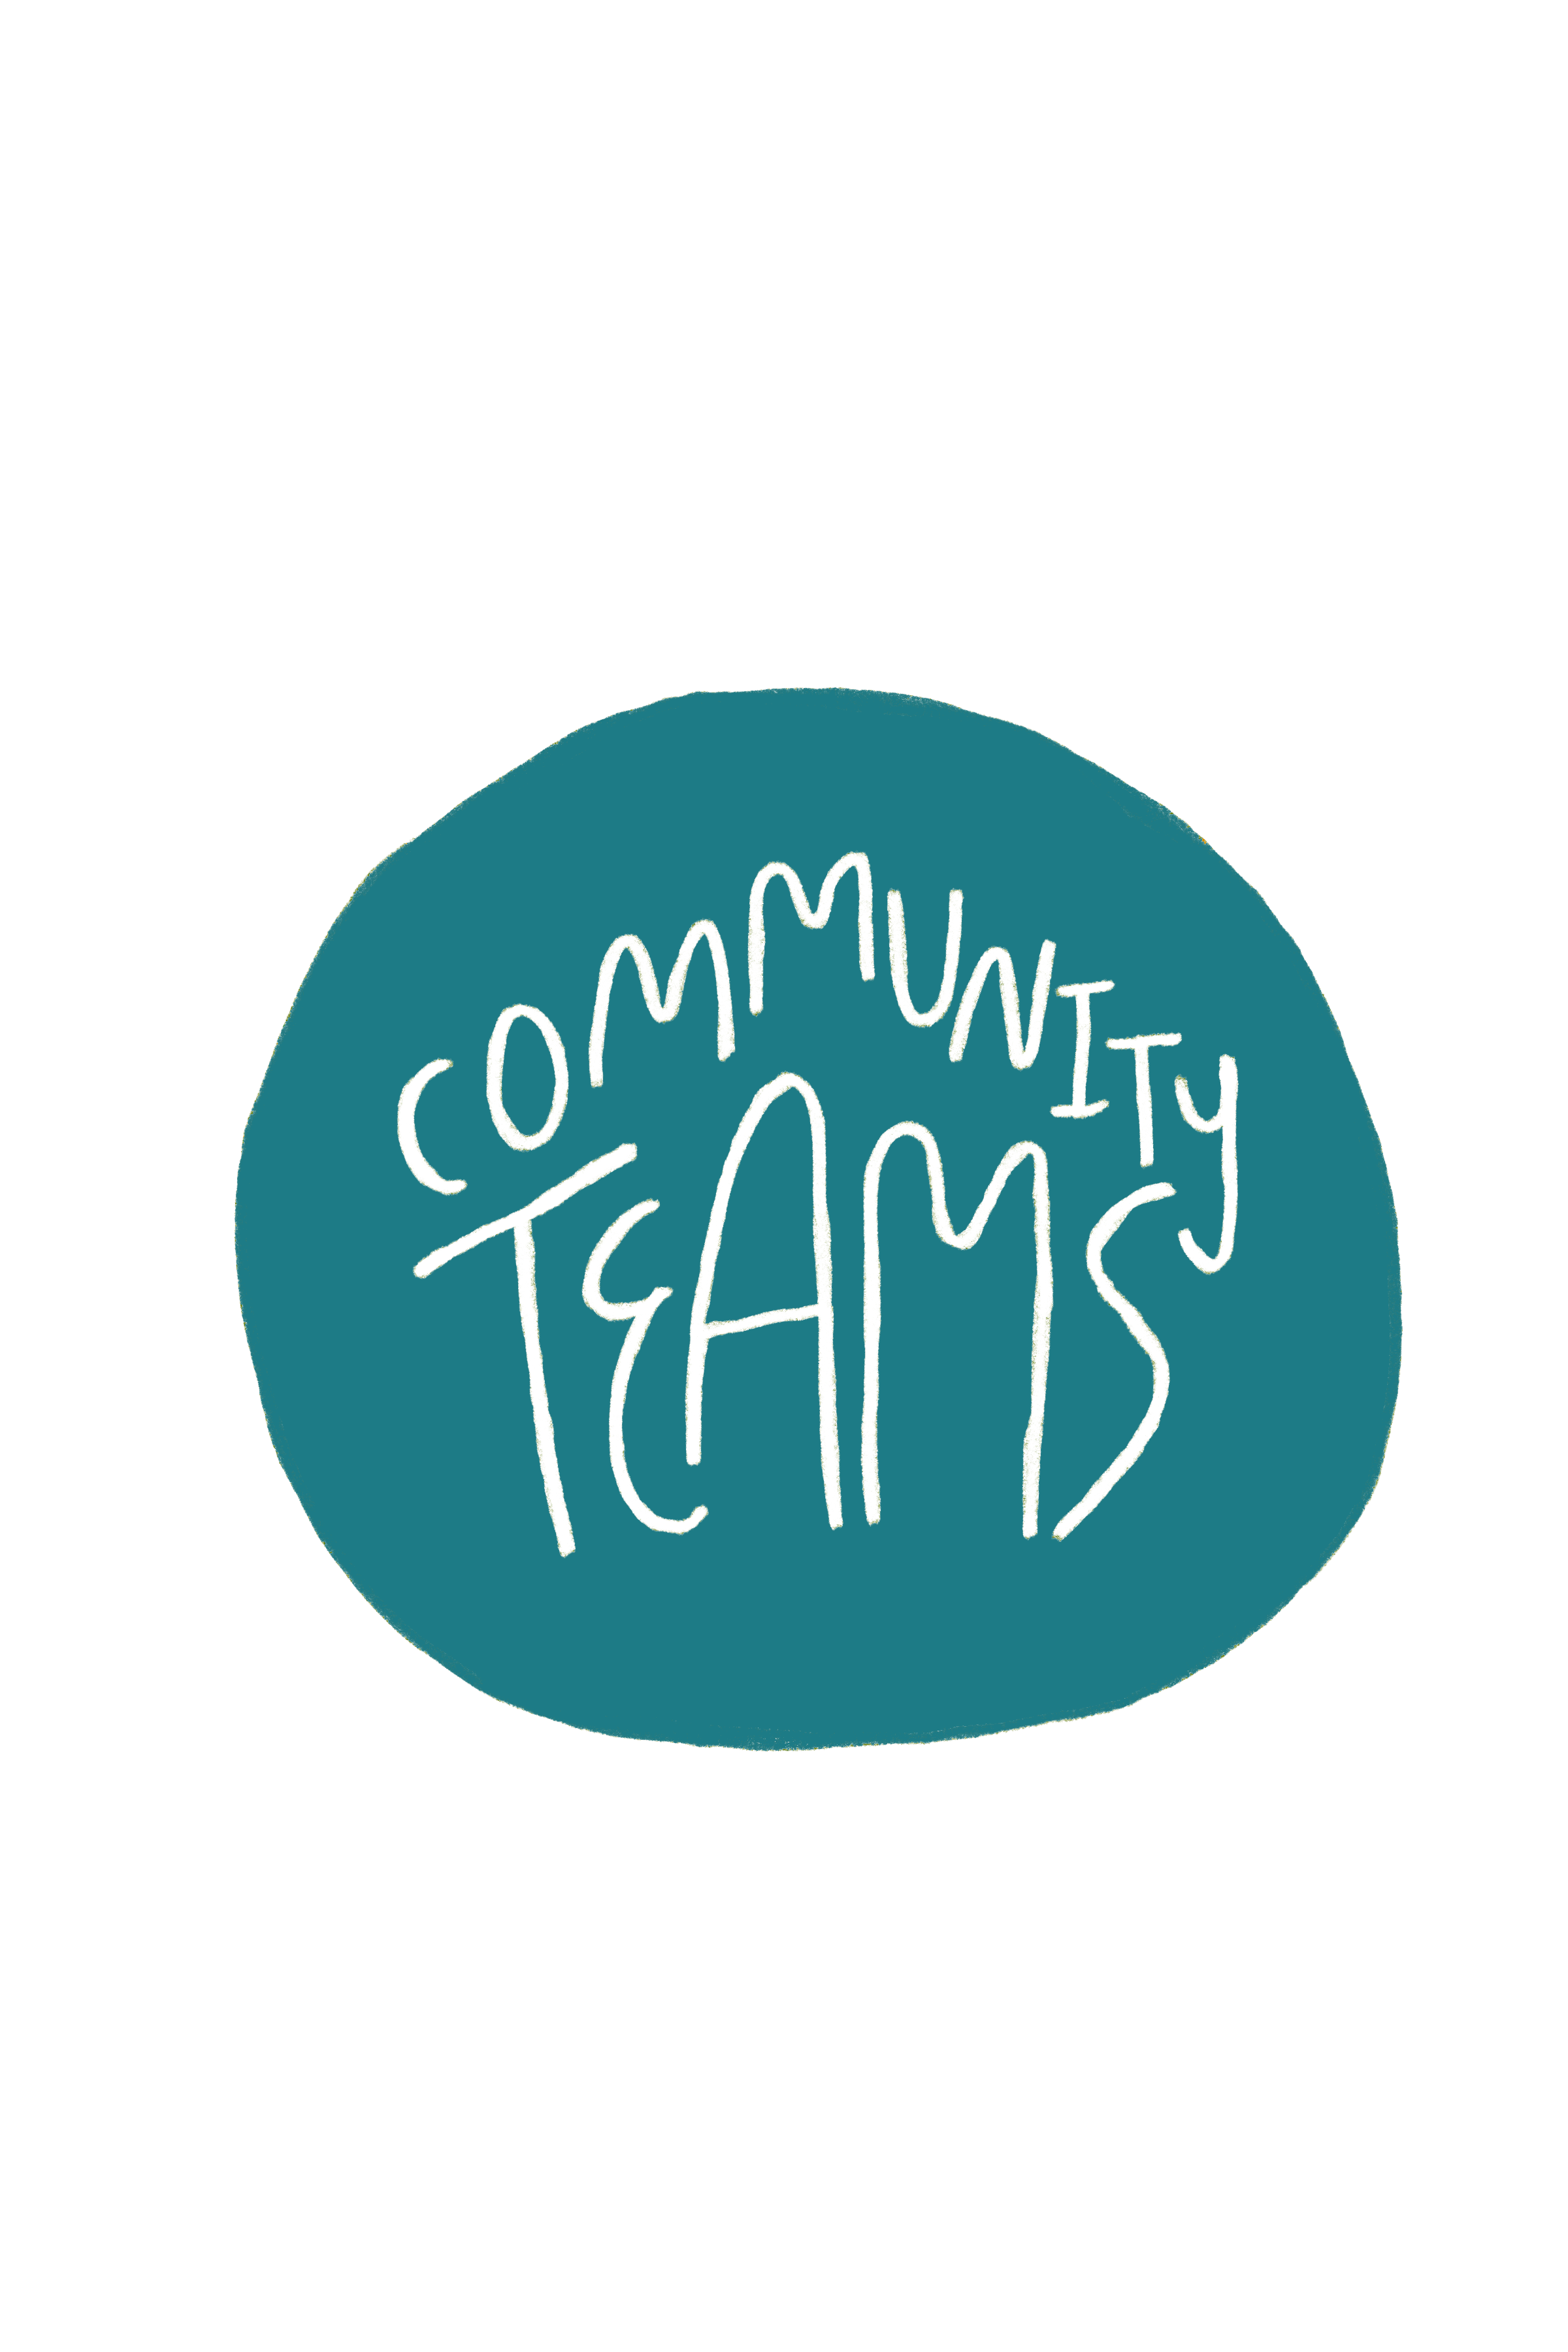 Community Teams